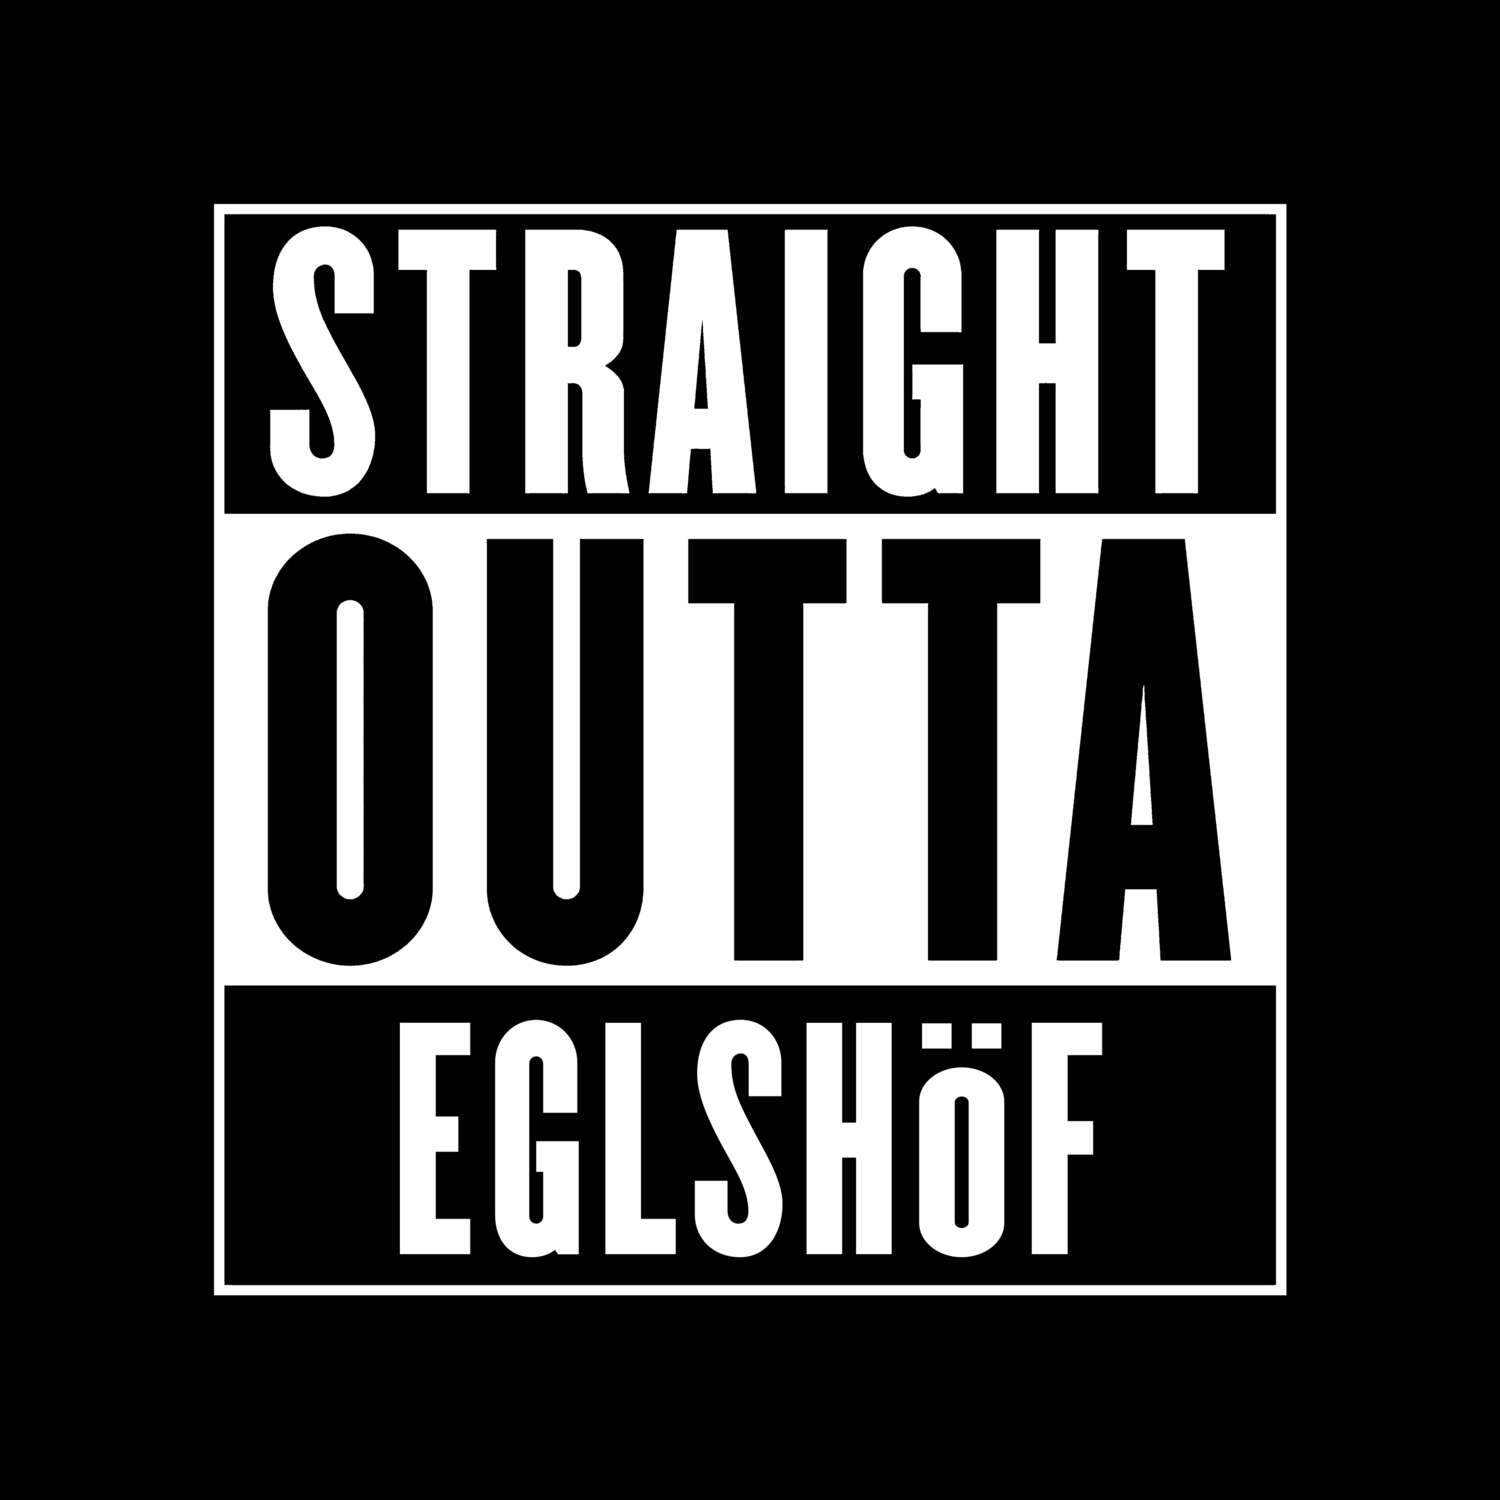 Eglshöf T-Shirt »Straight Outta«